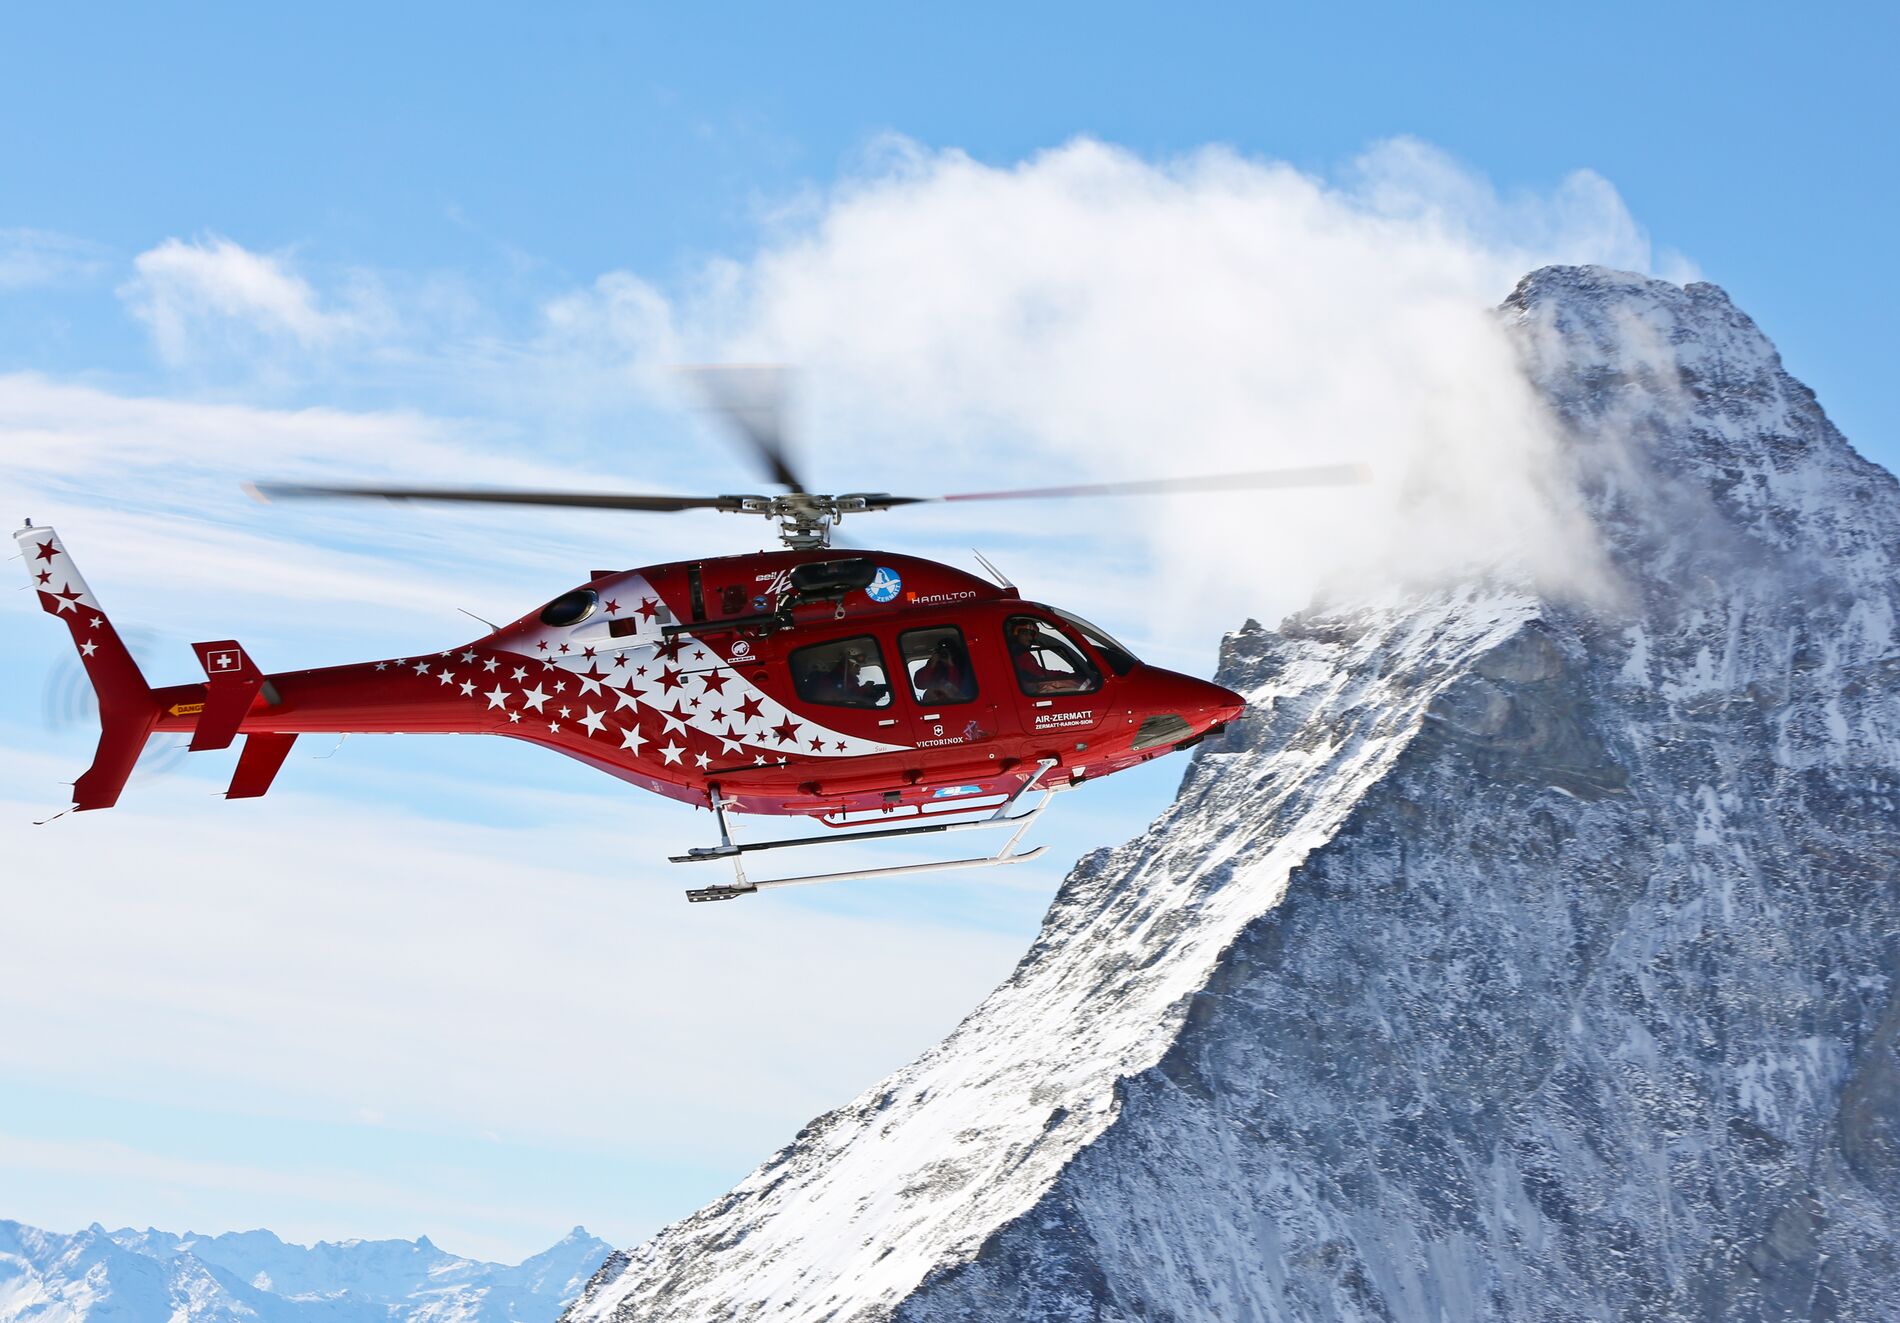 Air Zermatt adds a third Bell 429 to its fleet